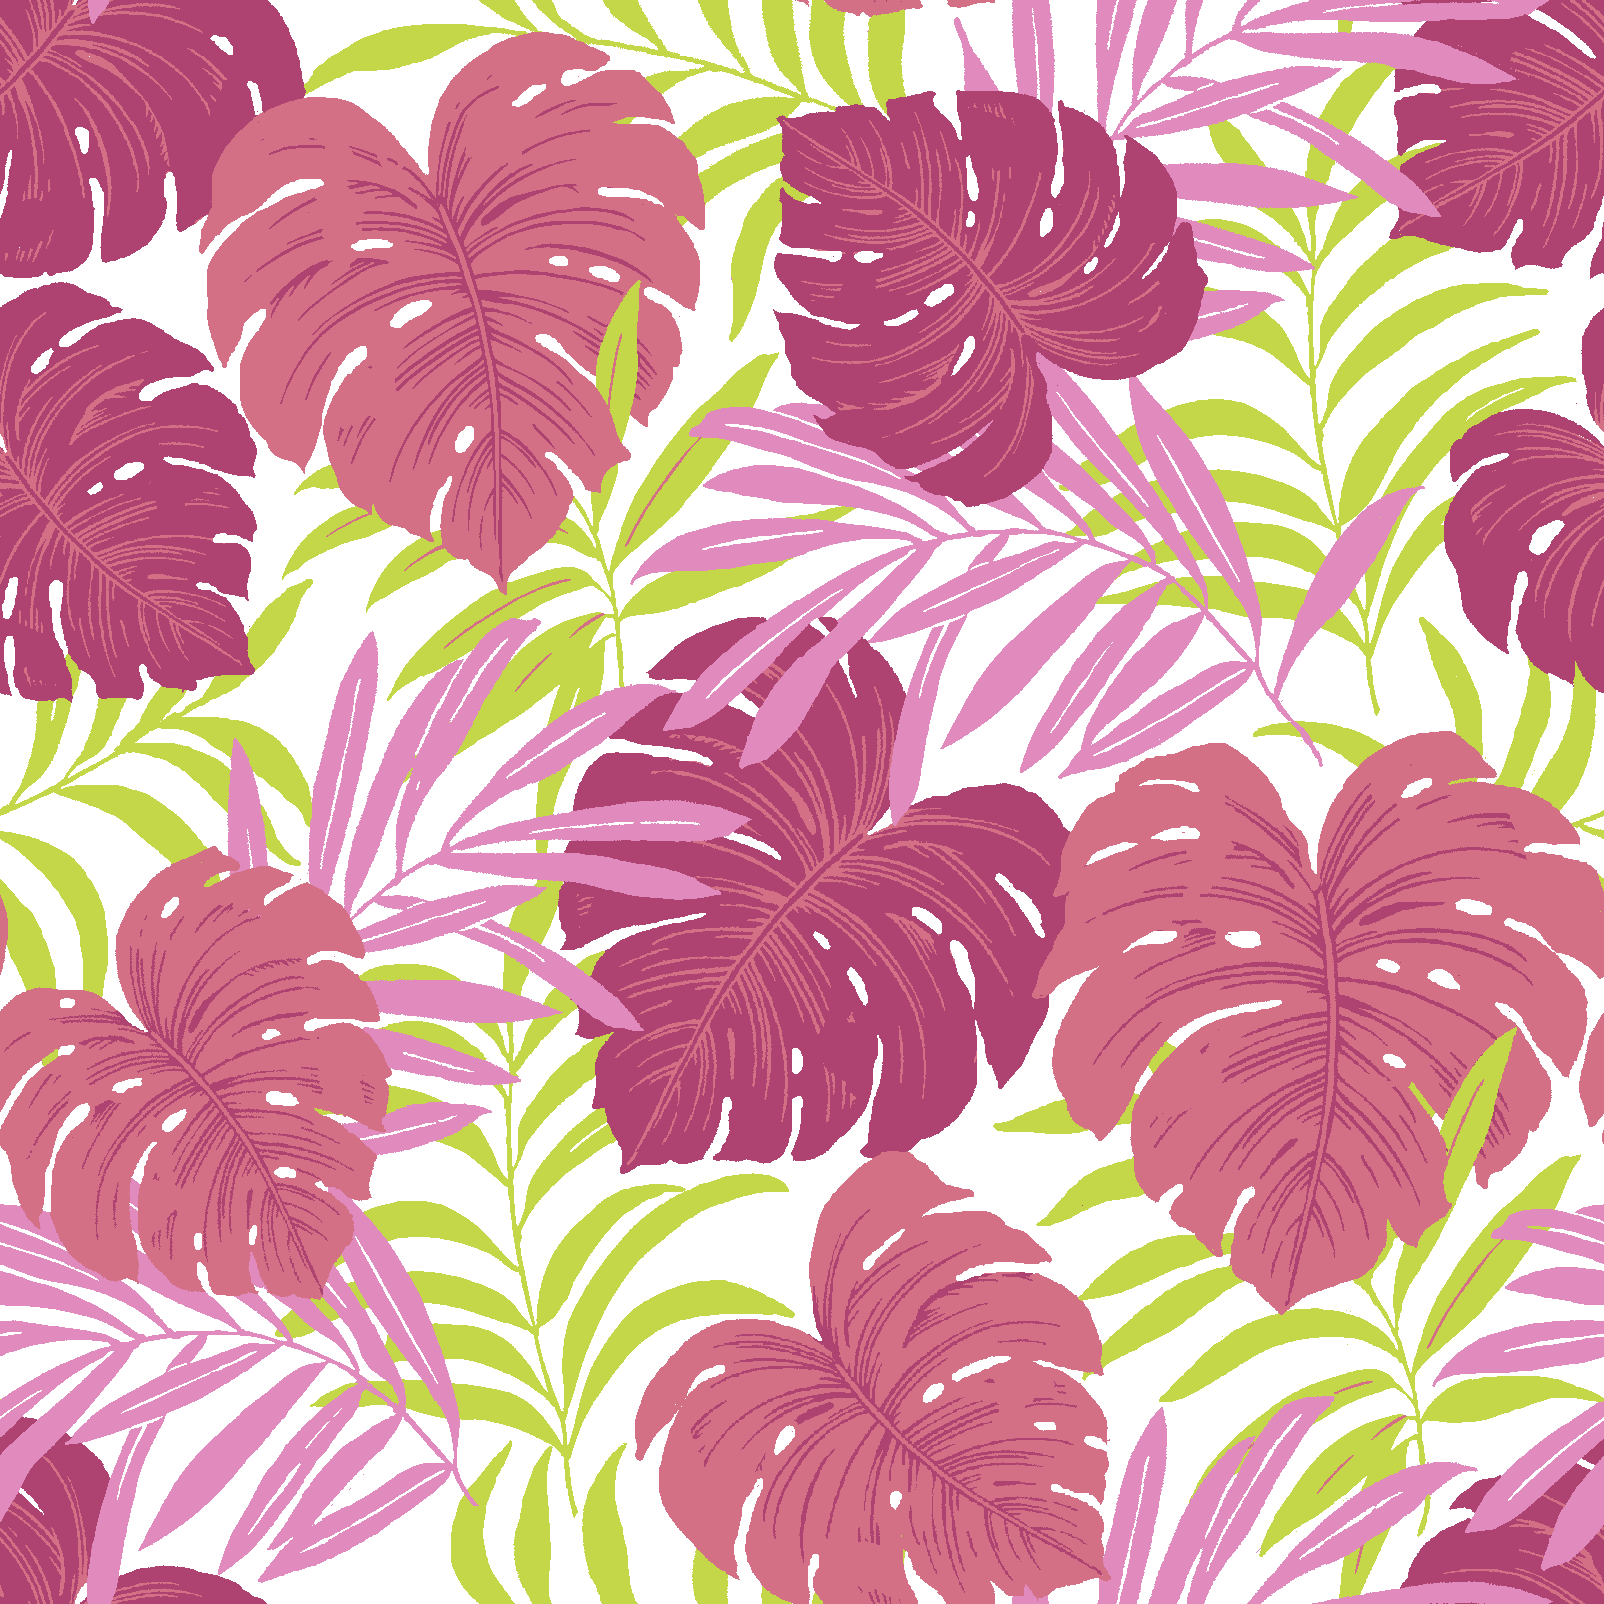 Waverly Inspirations Cotton 18" x 21" Tropical Split Leaf Coral Color Fat Quarter, 1 Piece